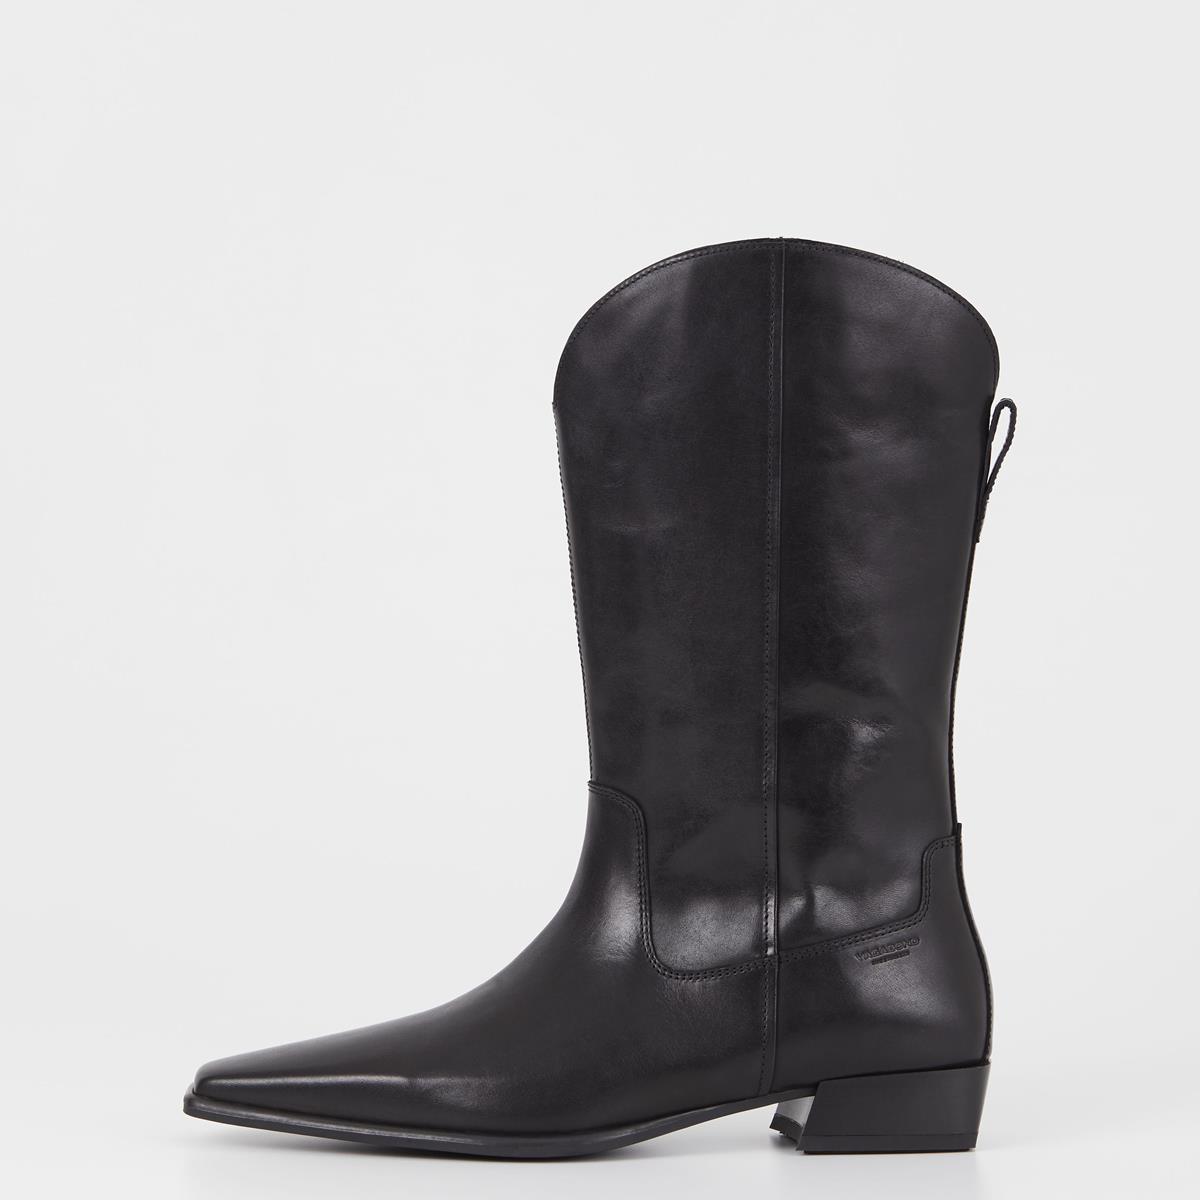 Nella - Black Boots Woman | Vagabond